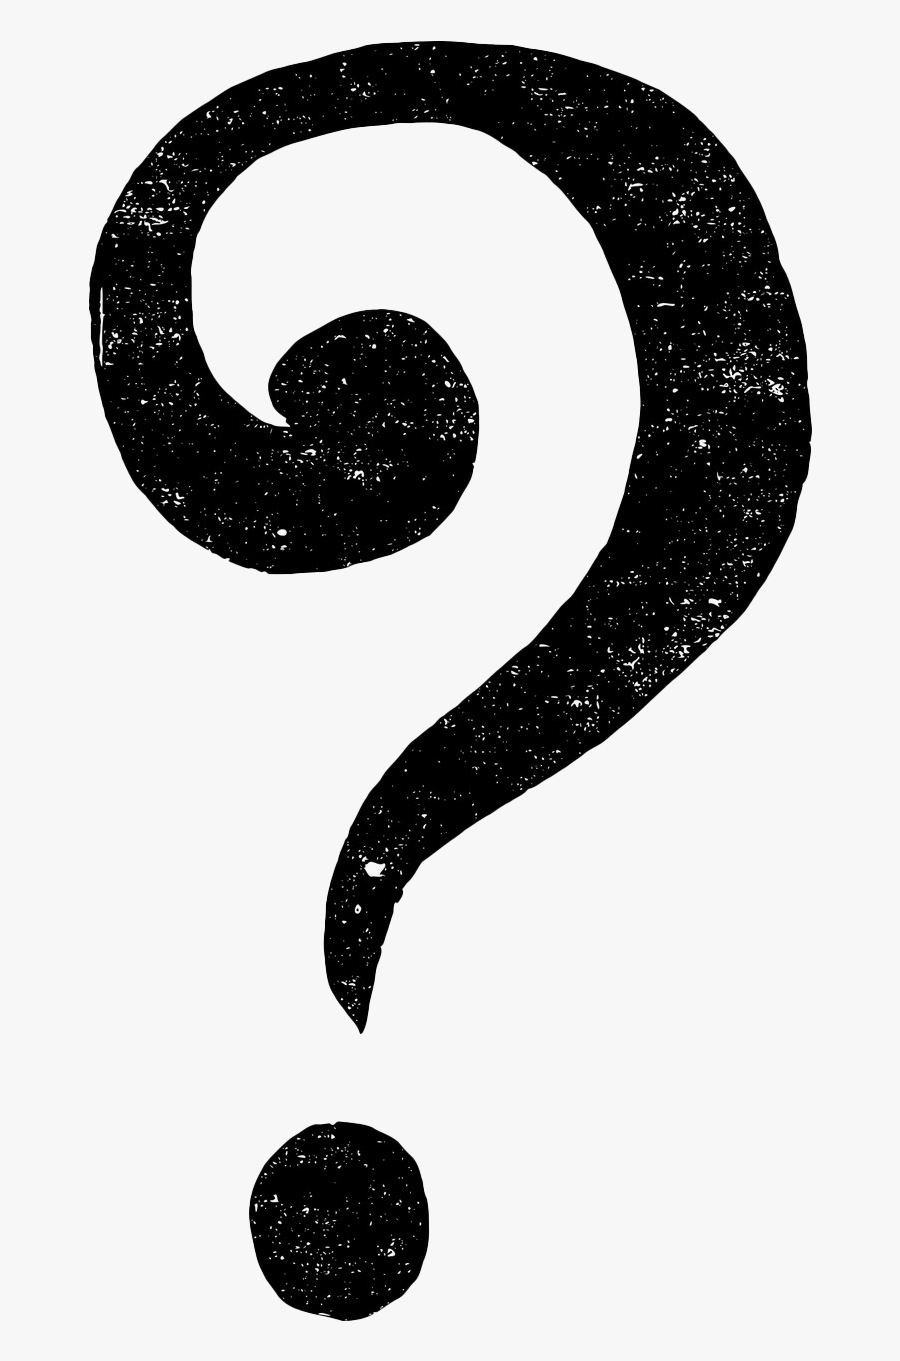 Question Question Mark Punctuation - Signos De Pregunta Png, Transparent Clipart